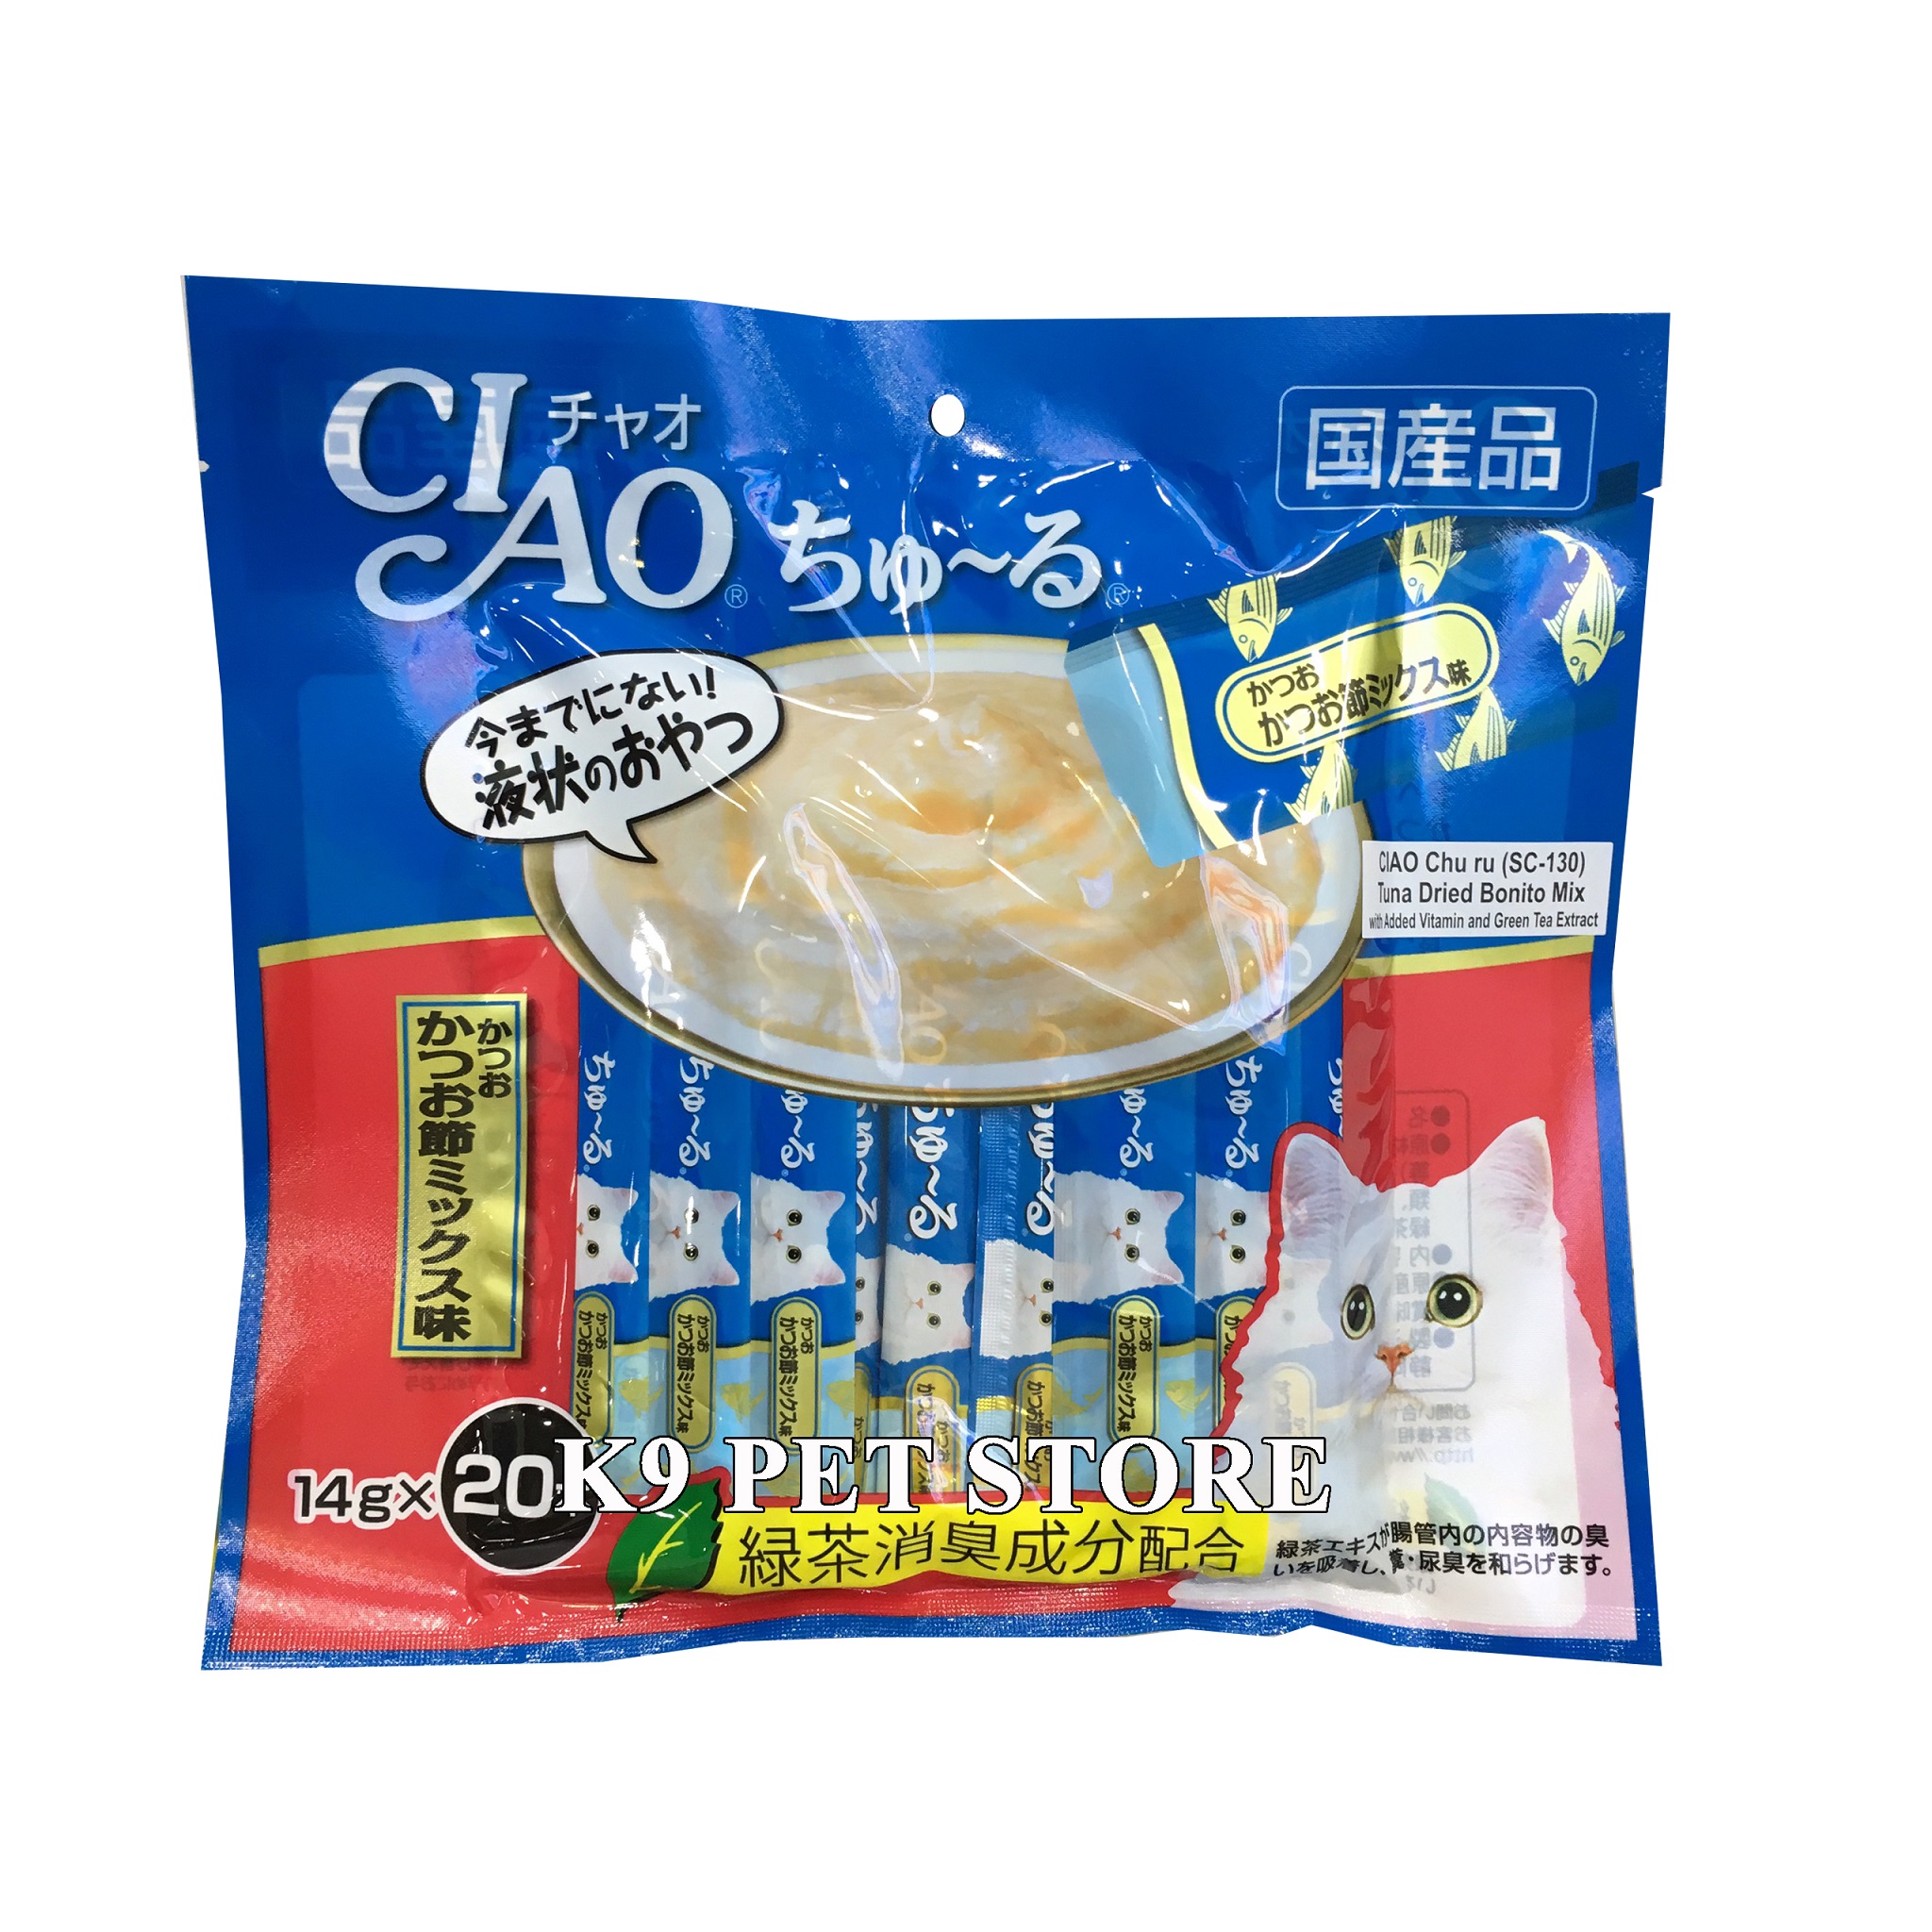 Ciao Churu Thái SC-130 cho mèo vị Tuna Dried Bonito Mix 14g*20